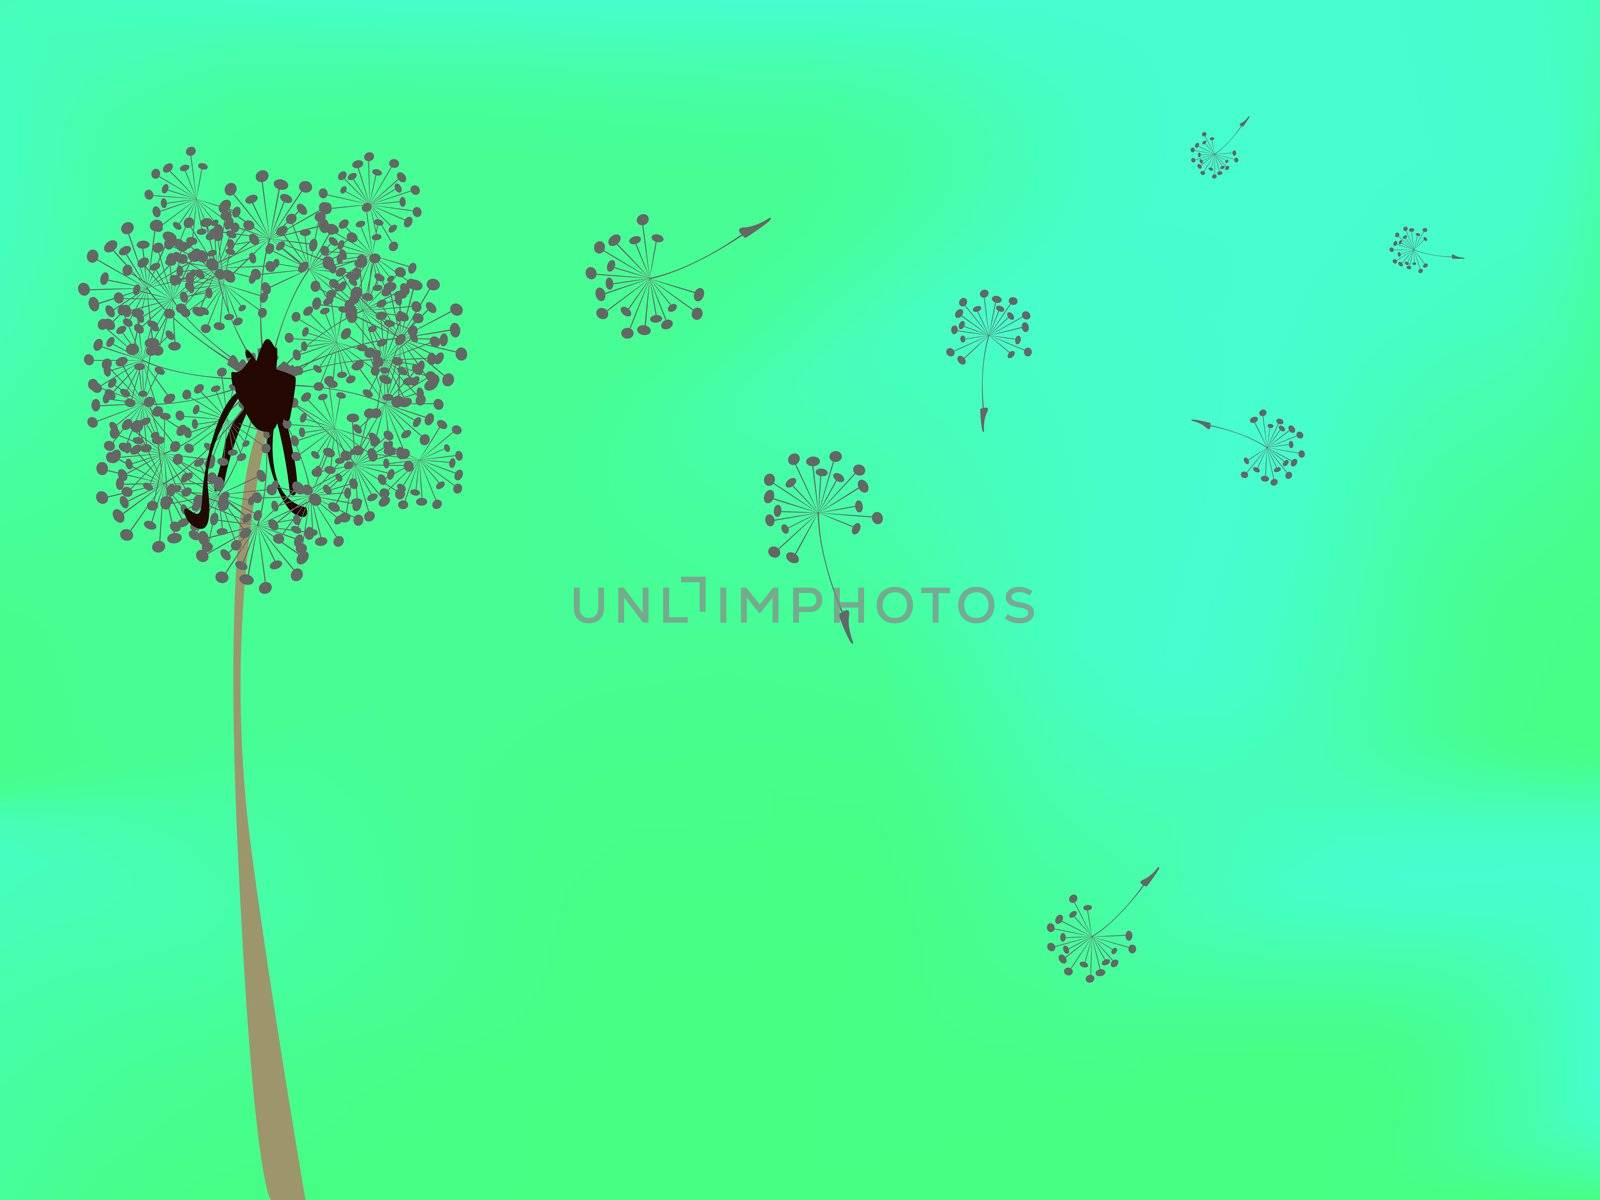 dandelion against green background by robertosch